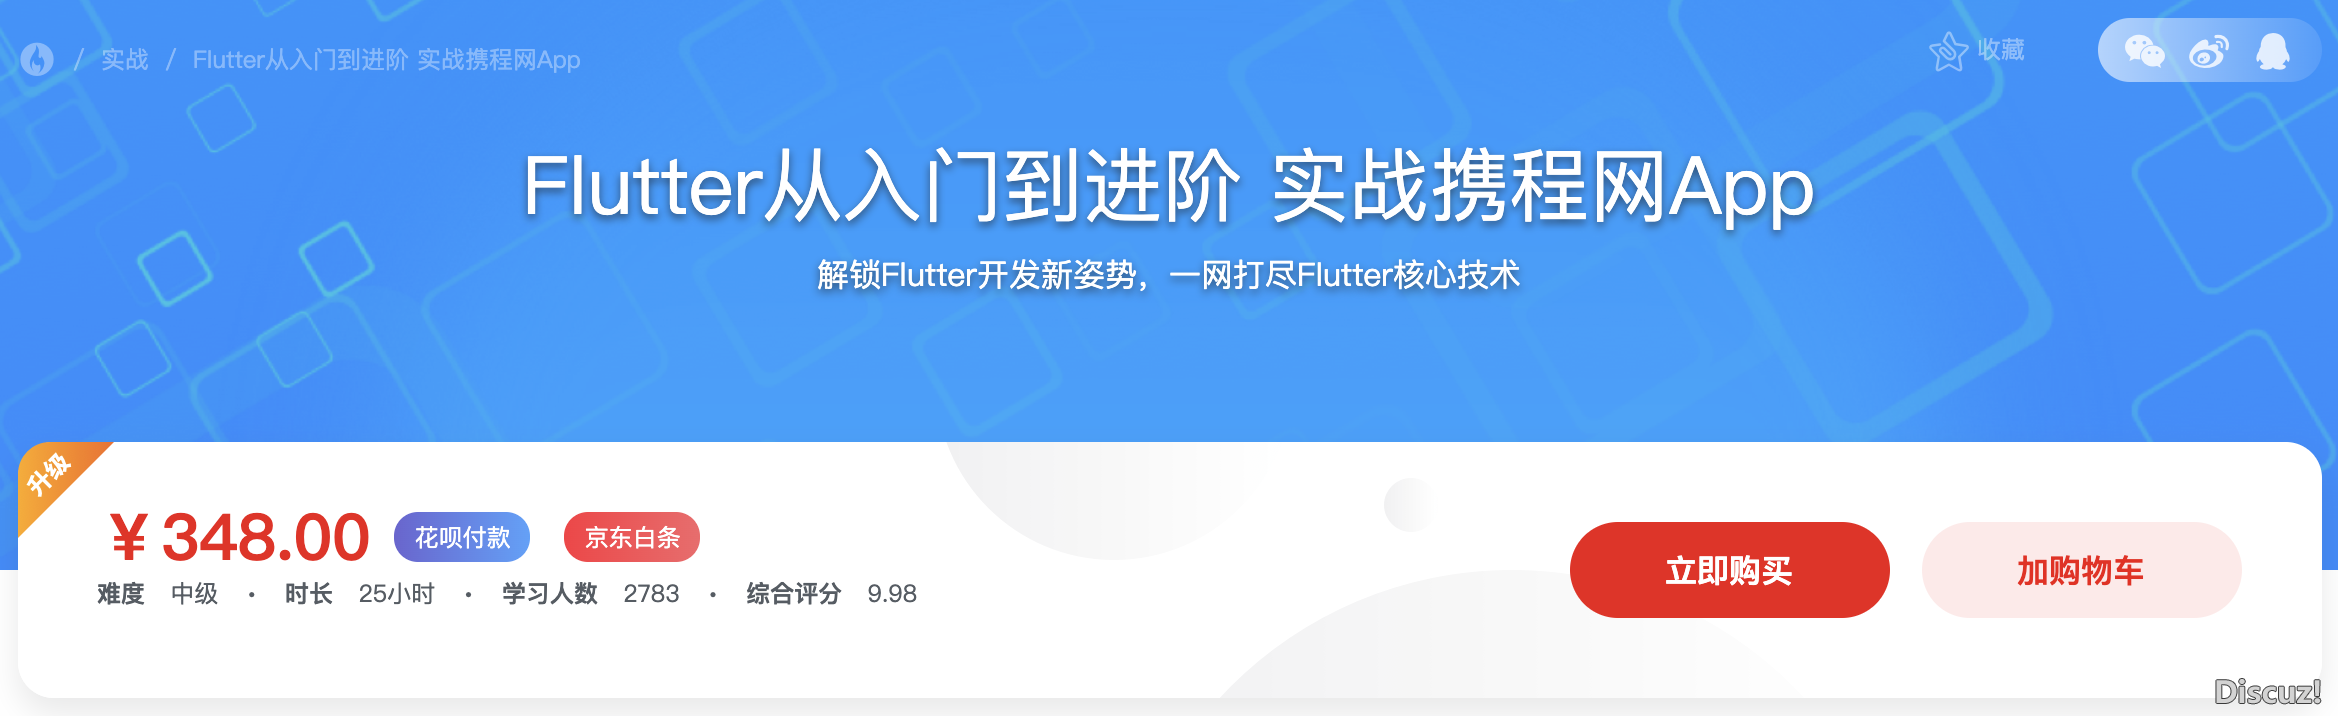 新版-Flutter从入门到进阶 实战携程网App 完整版